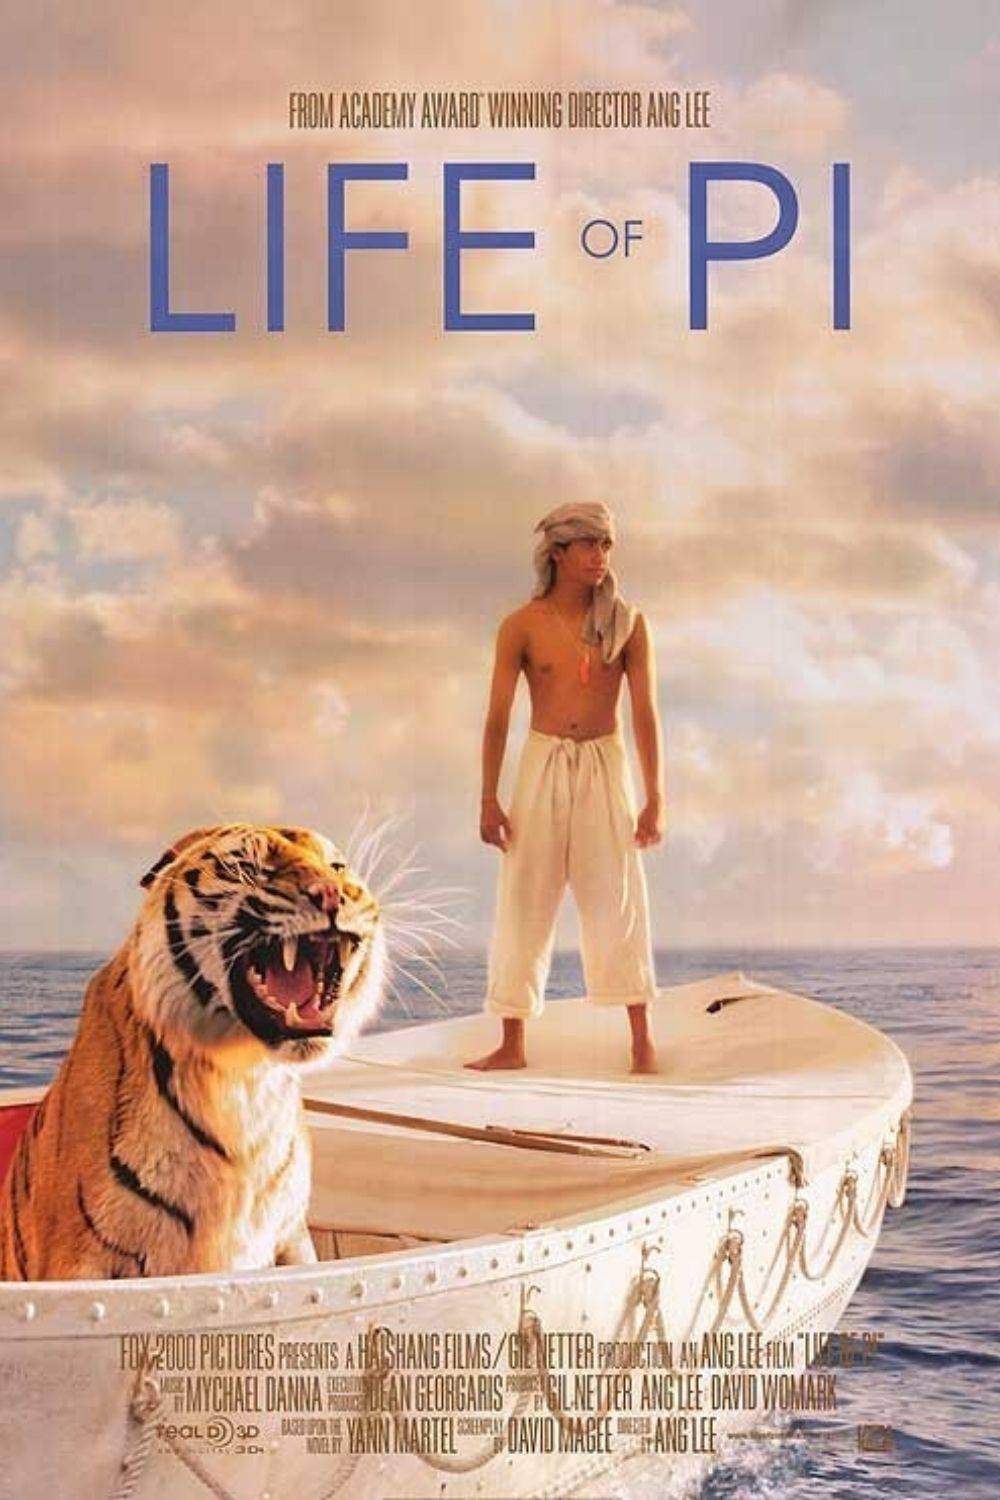 La vida de Pi (2012)